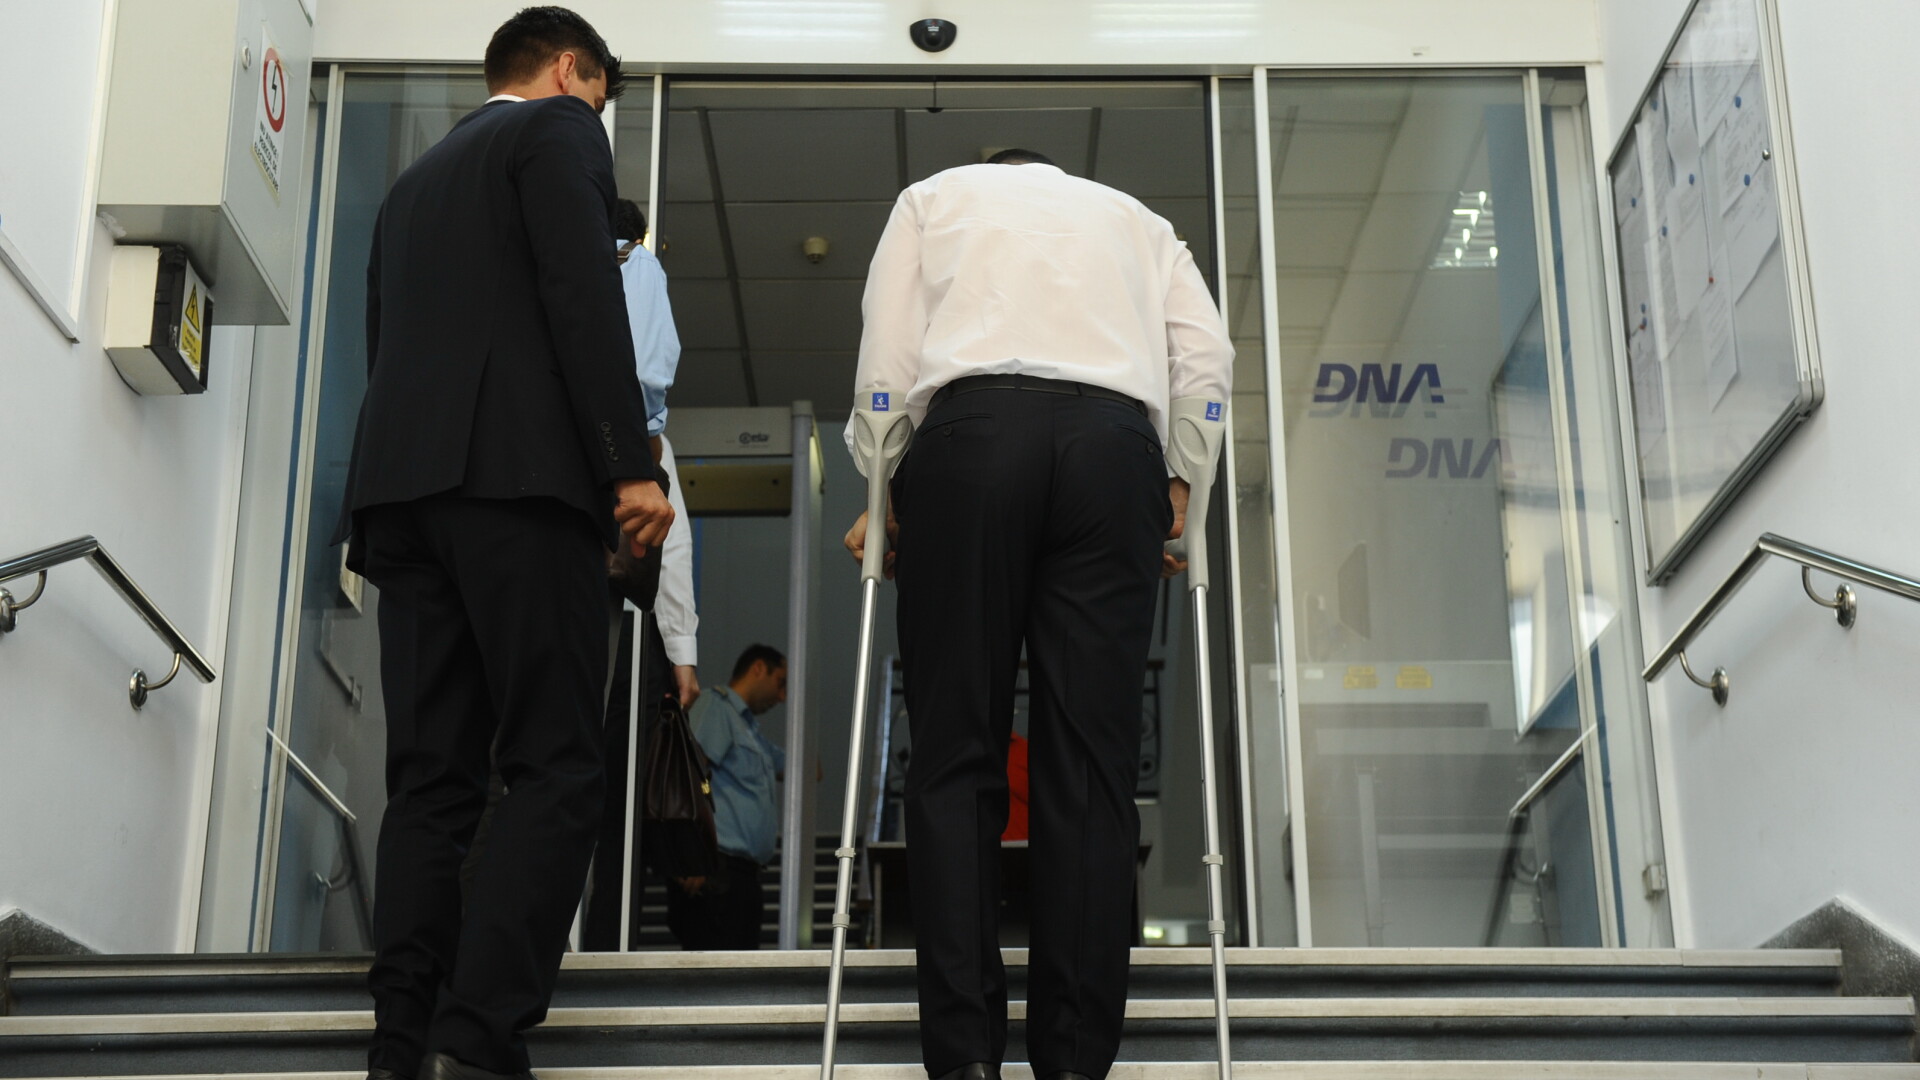 Victor Ponta in carje la sediul DNA - AGERPRES